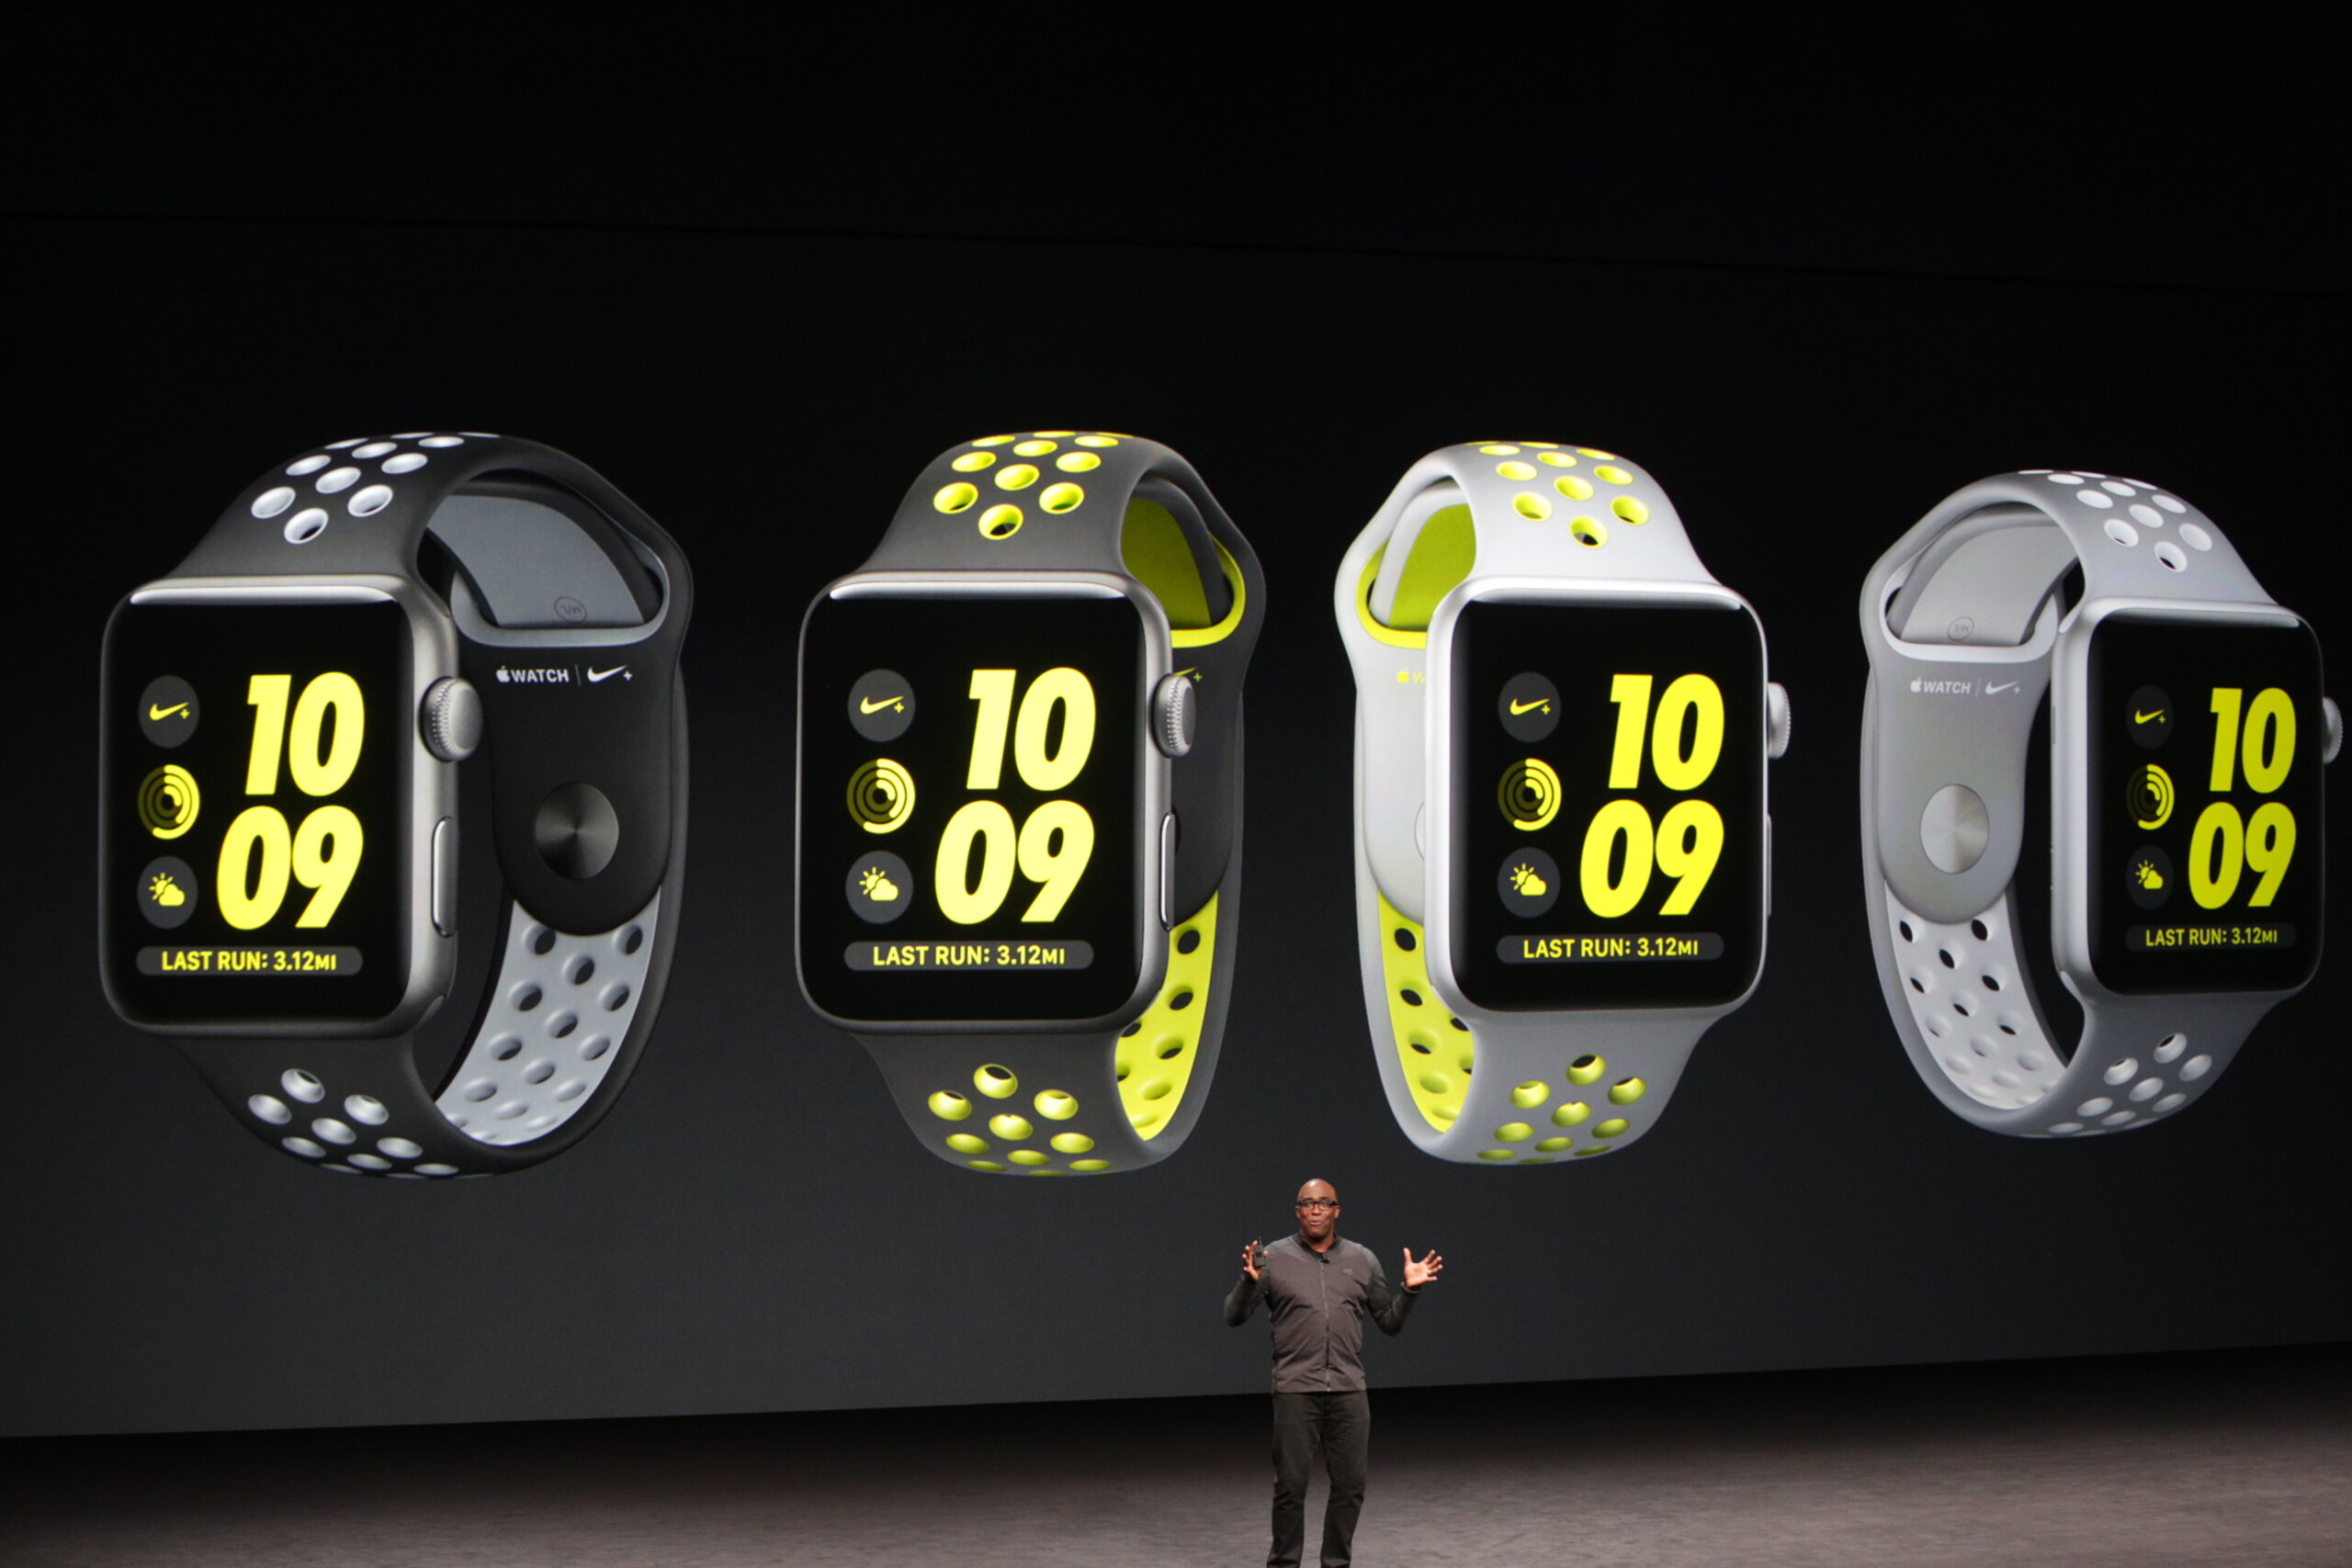 Apple เปิดตัว Apple Watch Series 2 อัพเกรดตัวเครื่องกันน้ำ เพิ่ม GPS ในตัว พร้อมความแรงด้วยซีพียูดูอัลคอร์!!